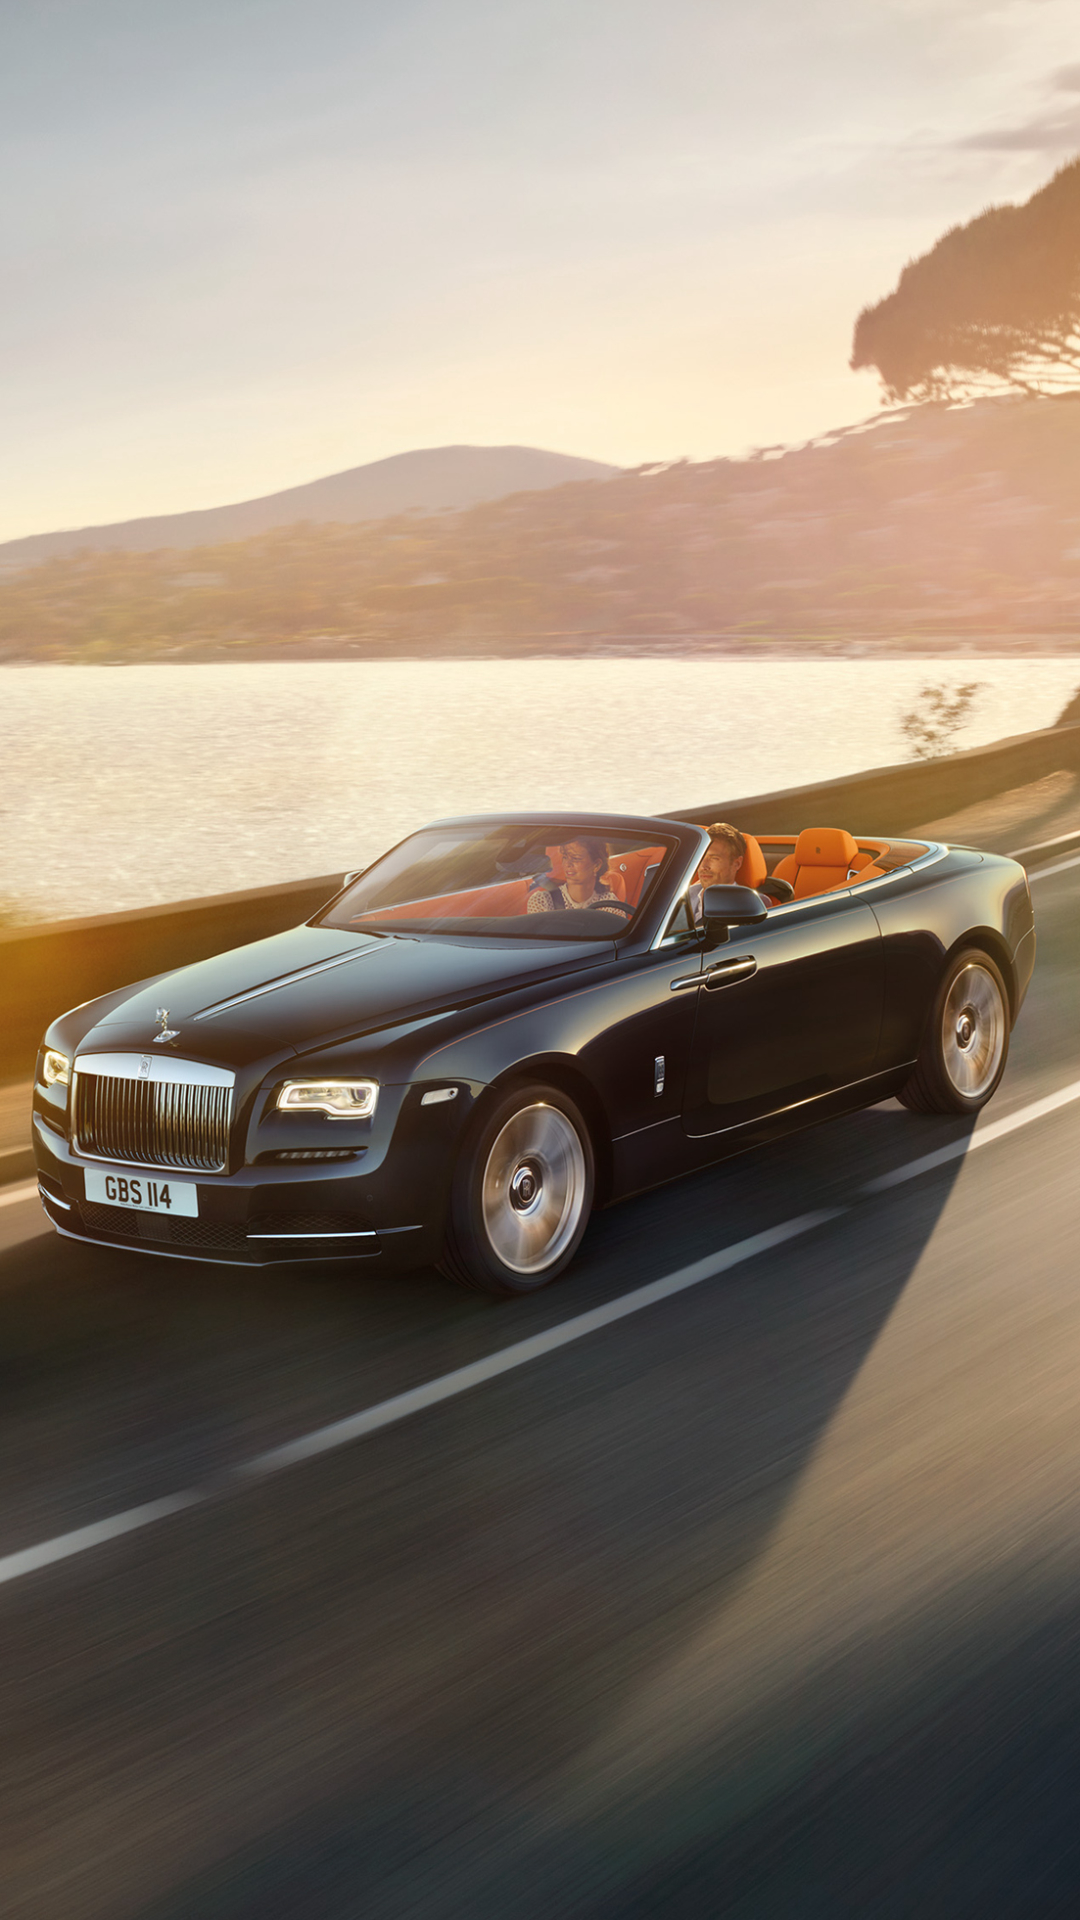 Descarga gratuita de fondo de pantalla para móvil de Rolls Royce, Coche, Gran Turismo, Vehículo, Vehículos, Coche Negro, Rolls Royce Amanecer.